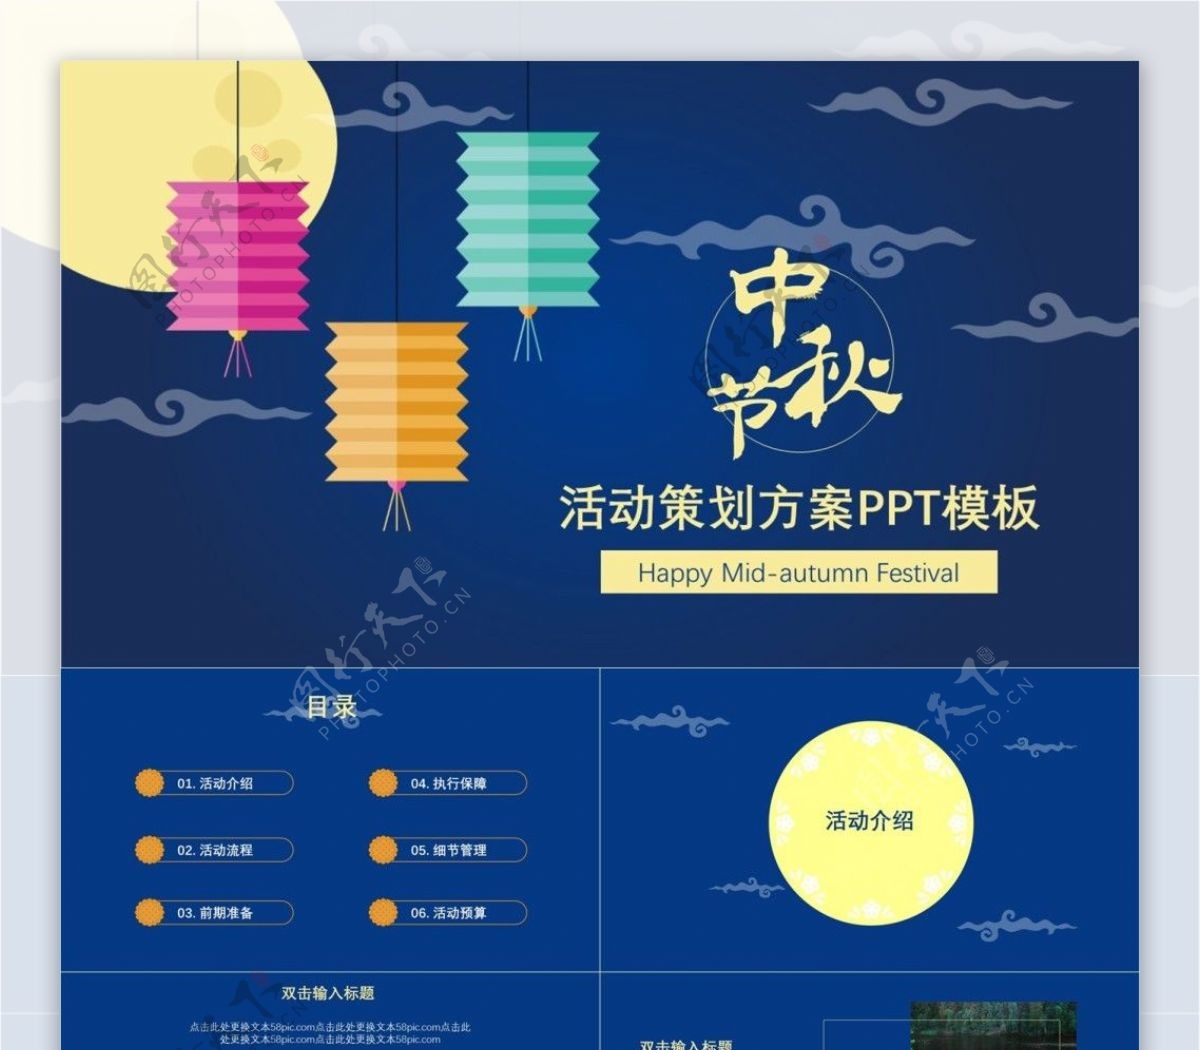 2018年中秋节活动策划宣传ppt排版